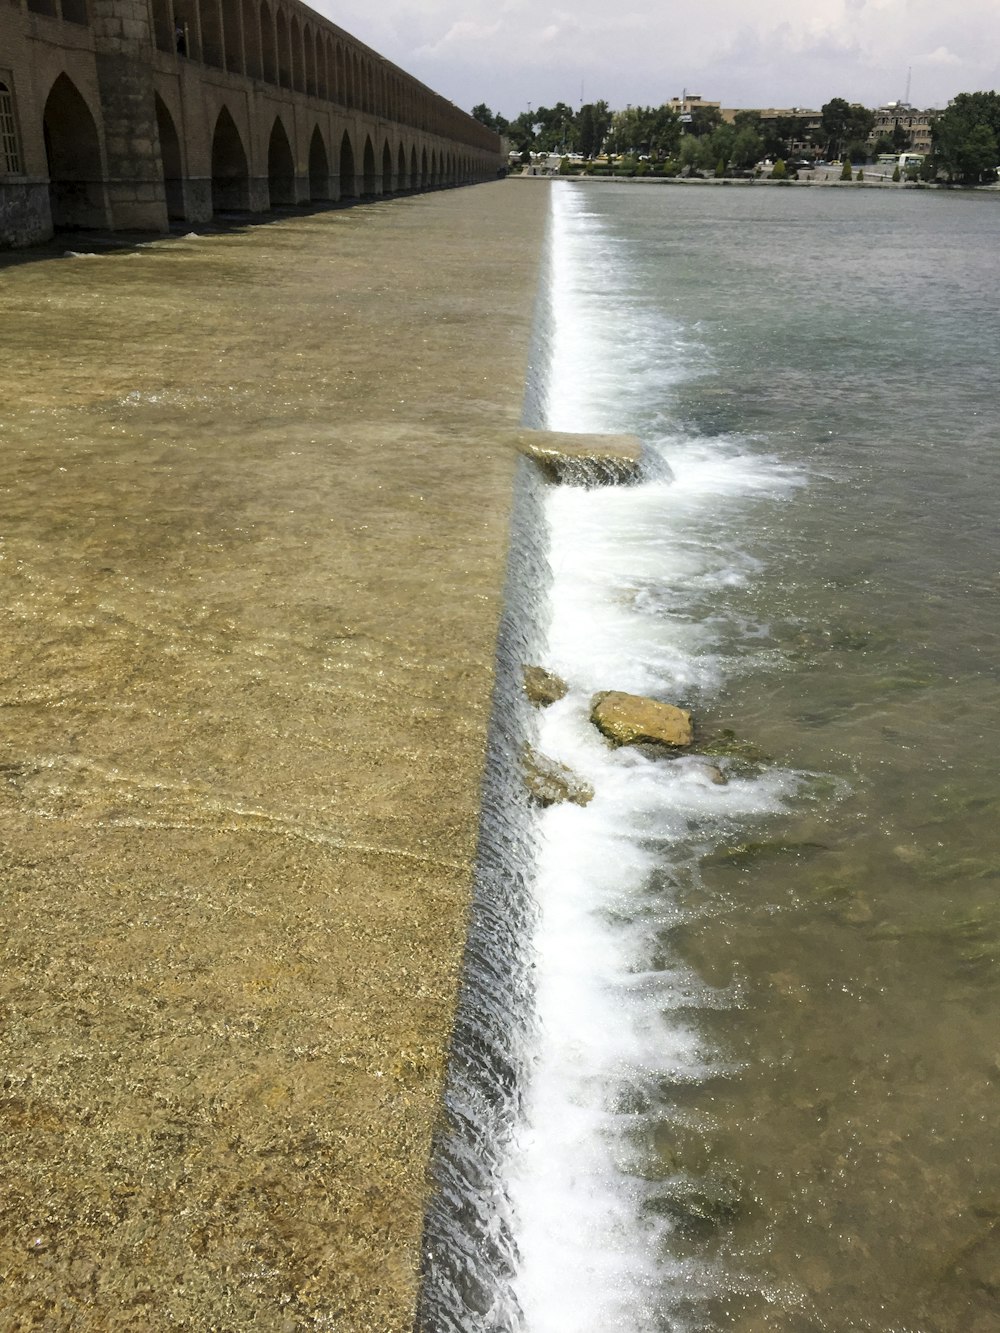 flowing body of water near bridge